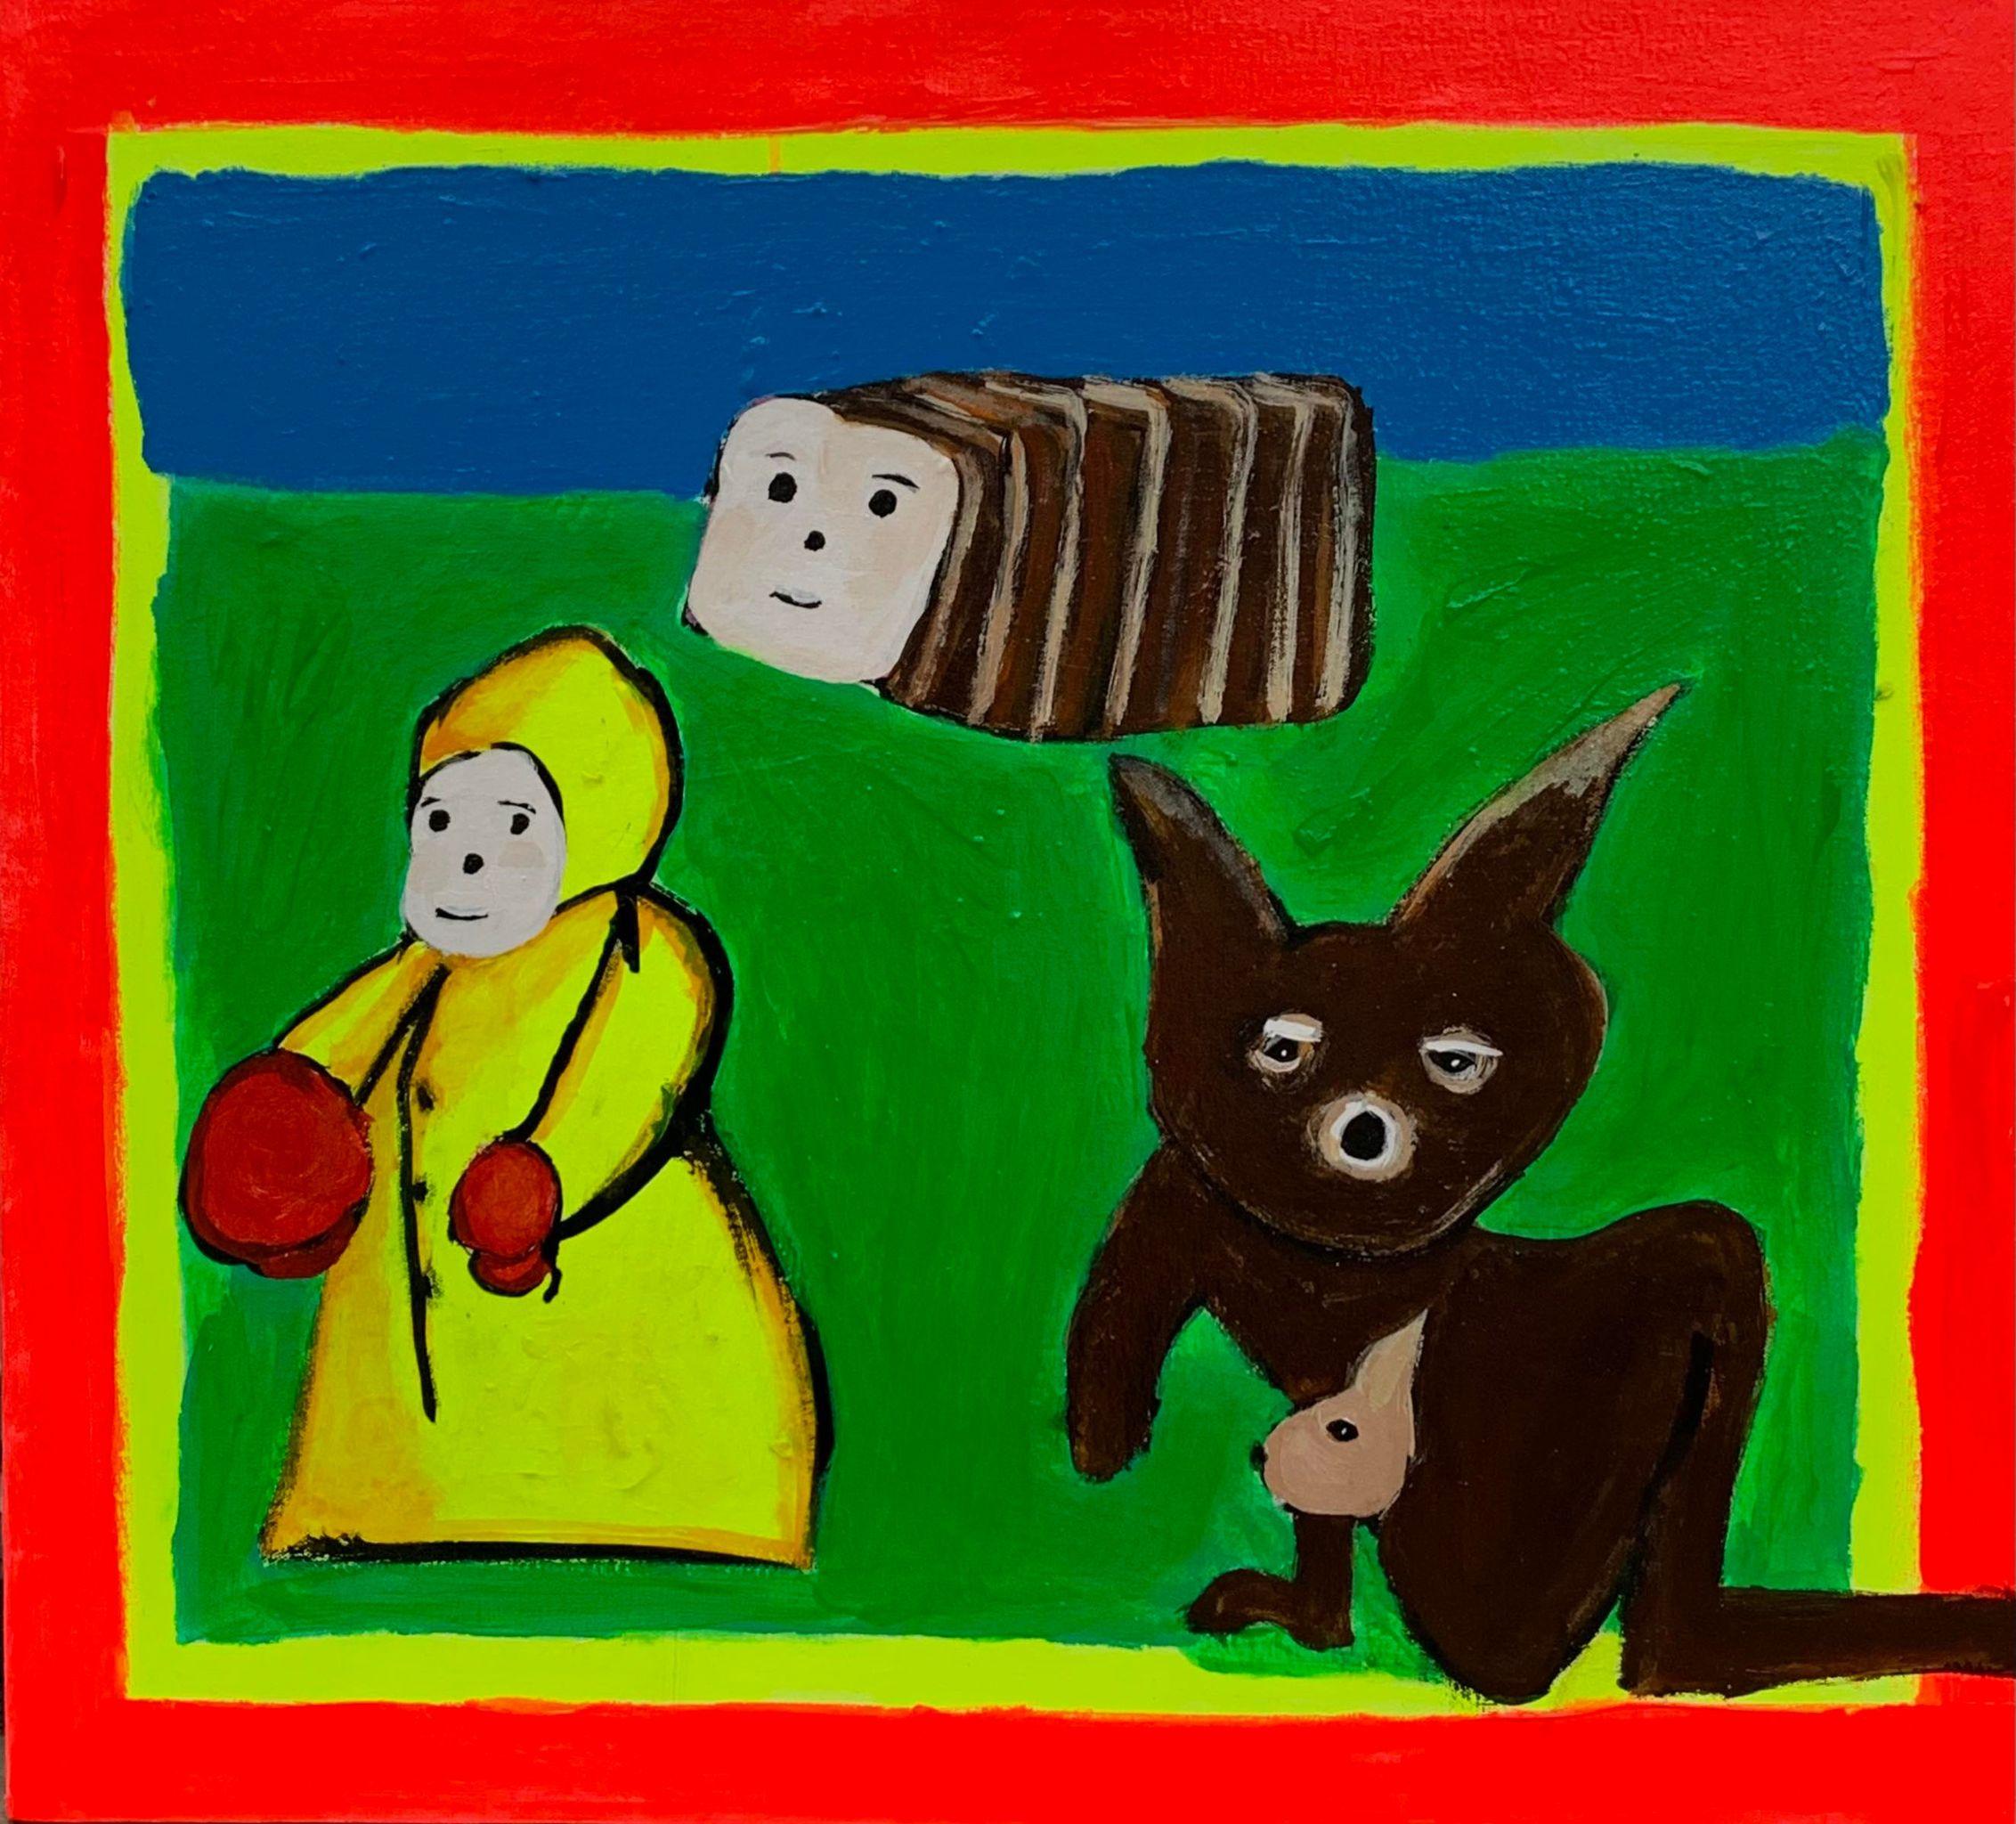 Marron et jaune 1
2022
Acrylique sur toile
24 x 28 pouces

La pratique prolifique de Brian Leo se situe quelque part entre le surréalisme grunge, le pop post-paint et l'école de New York. Son marquage figuratif immédiat s'inscrit dans des contextes